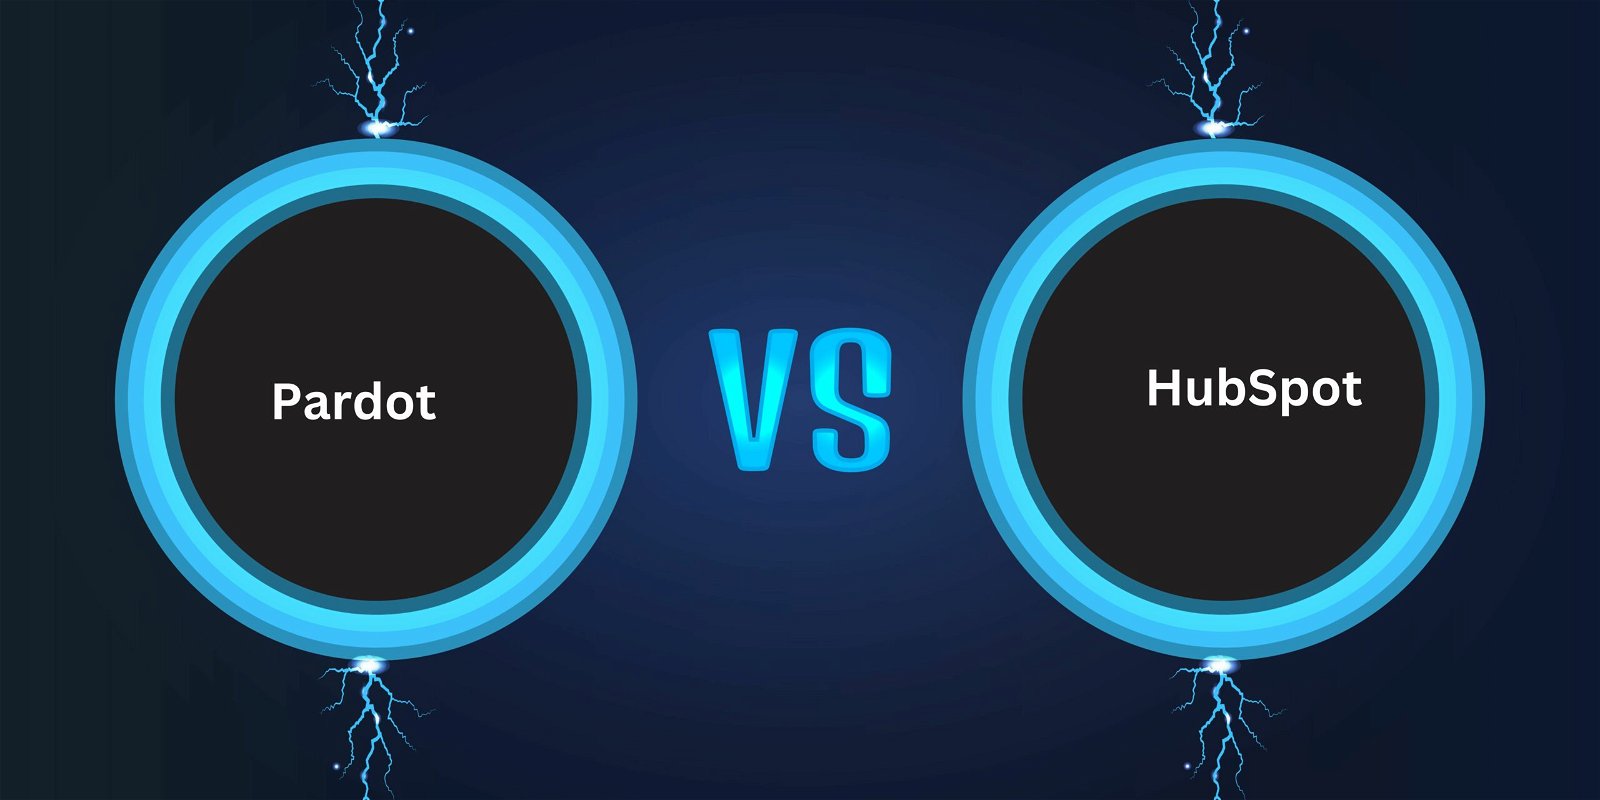 Pardot vs HubSpot